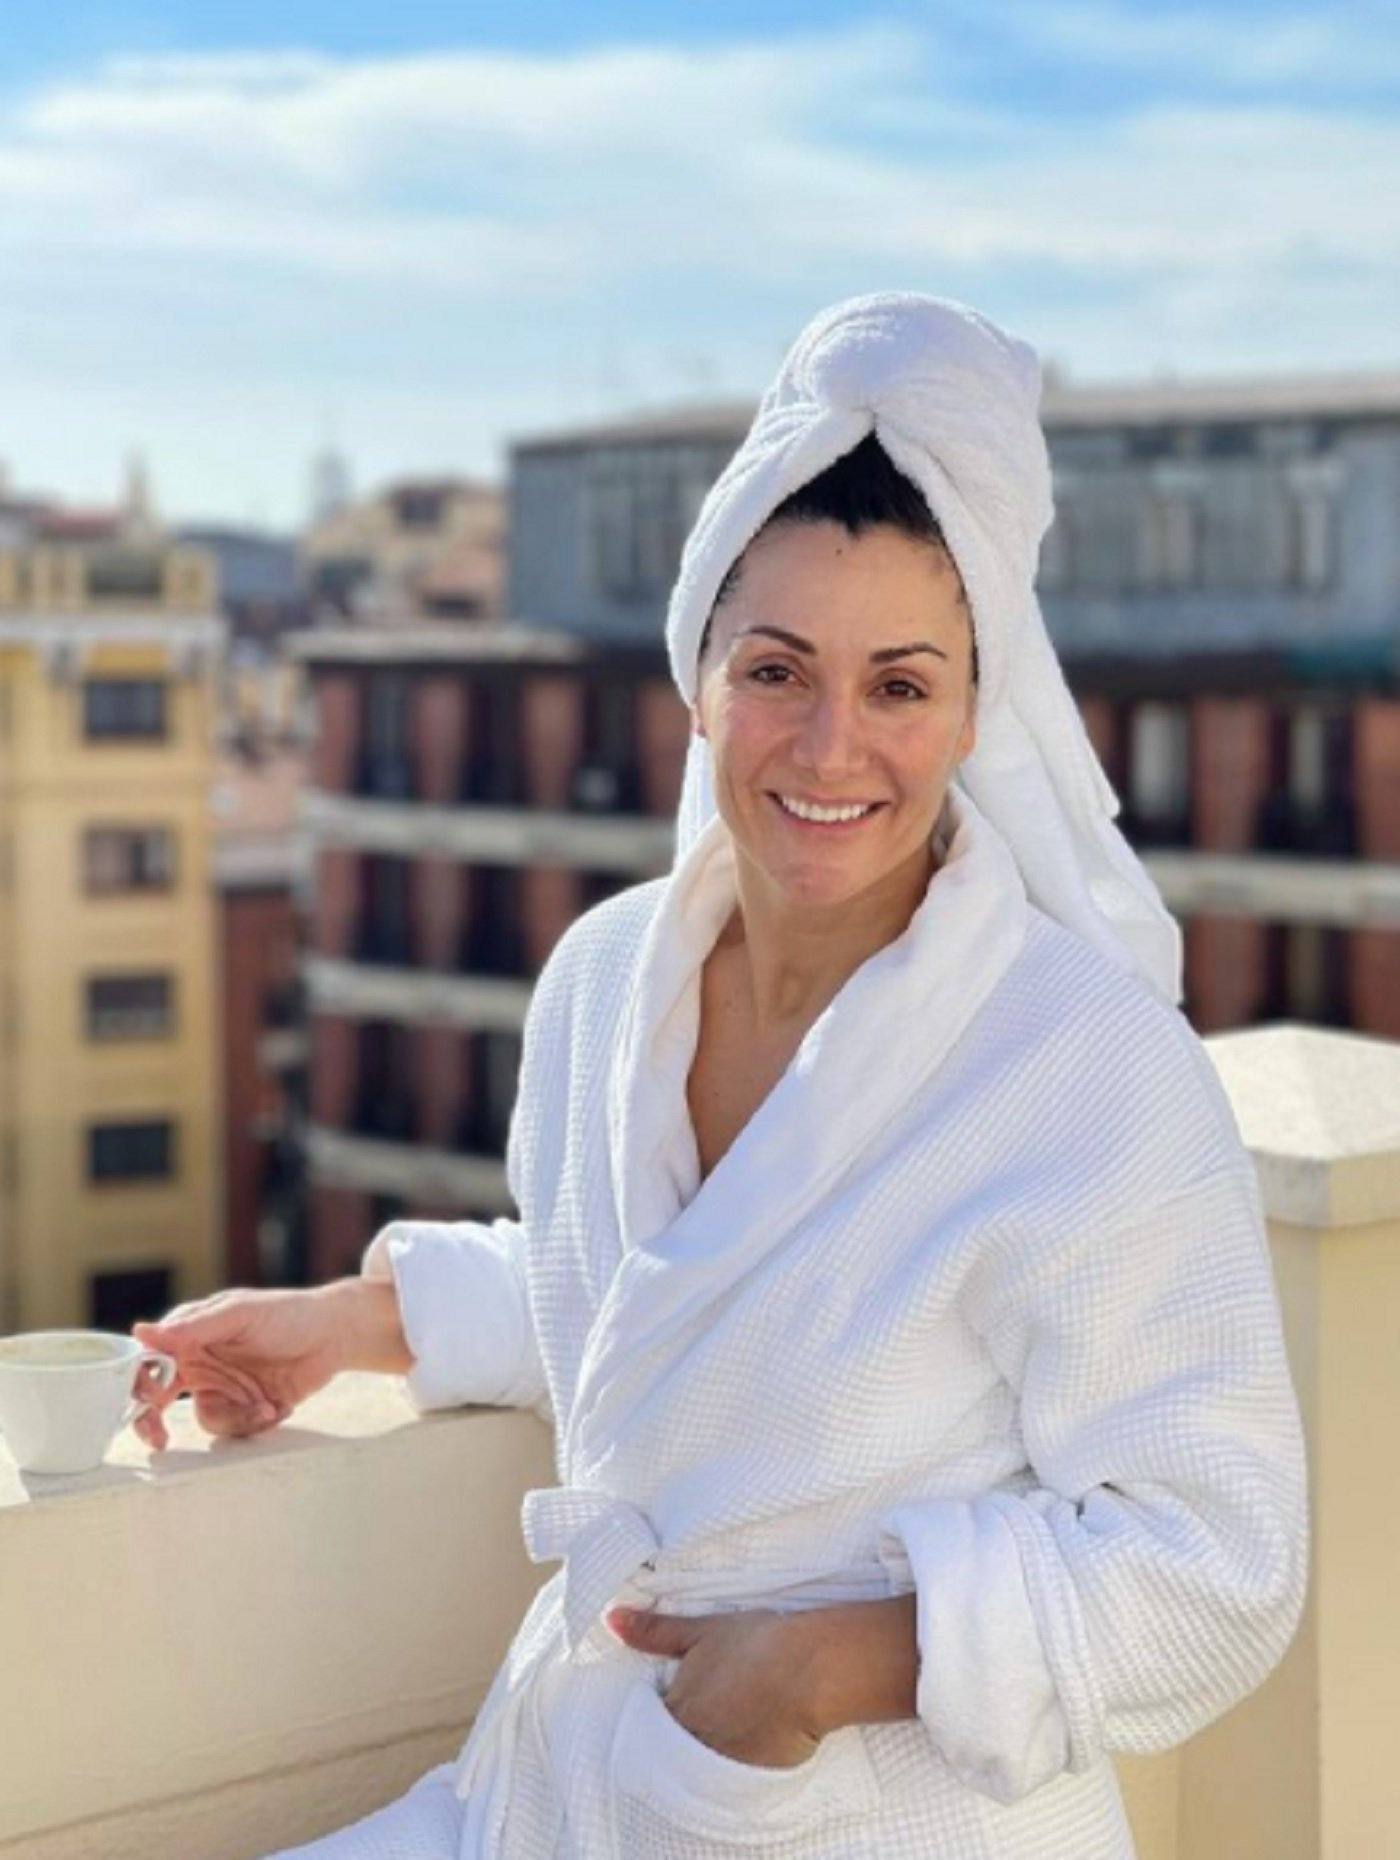 La nòvia de Sandra Barneda a Barcelona: hotel de luxe per més de 1.200€ la nit